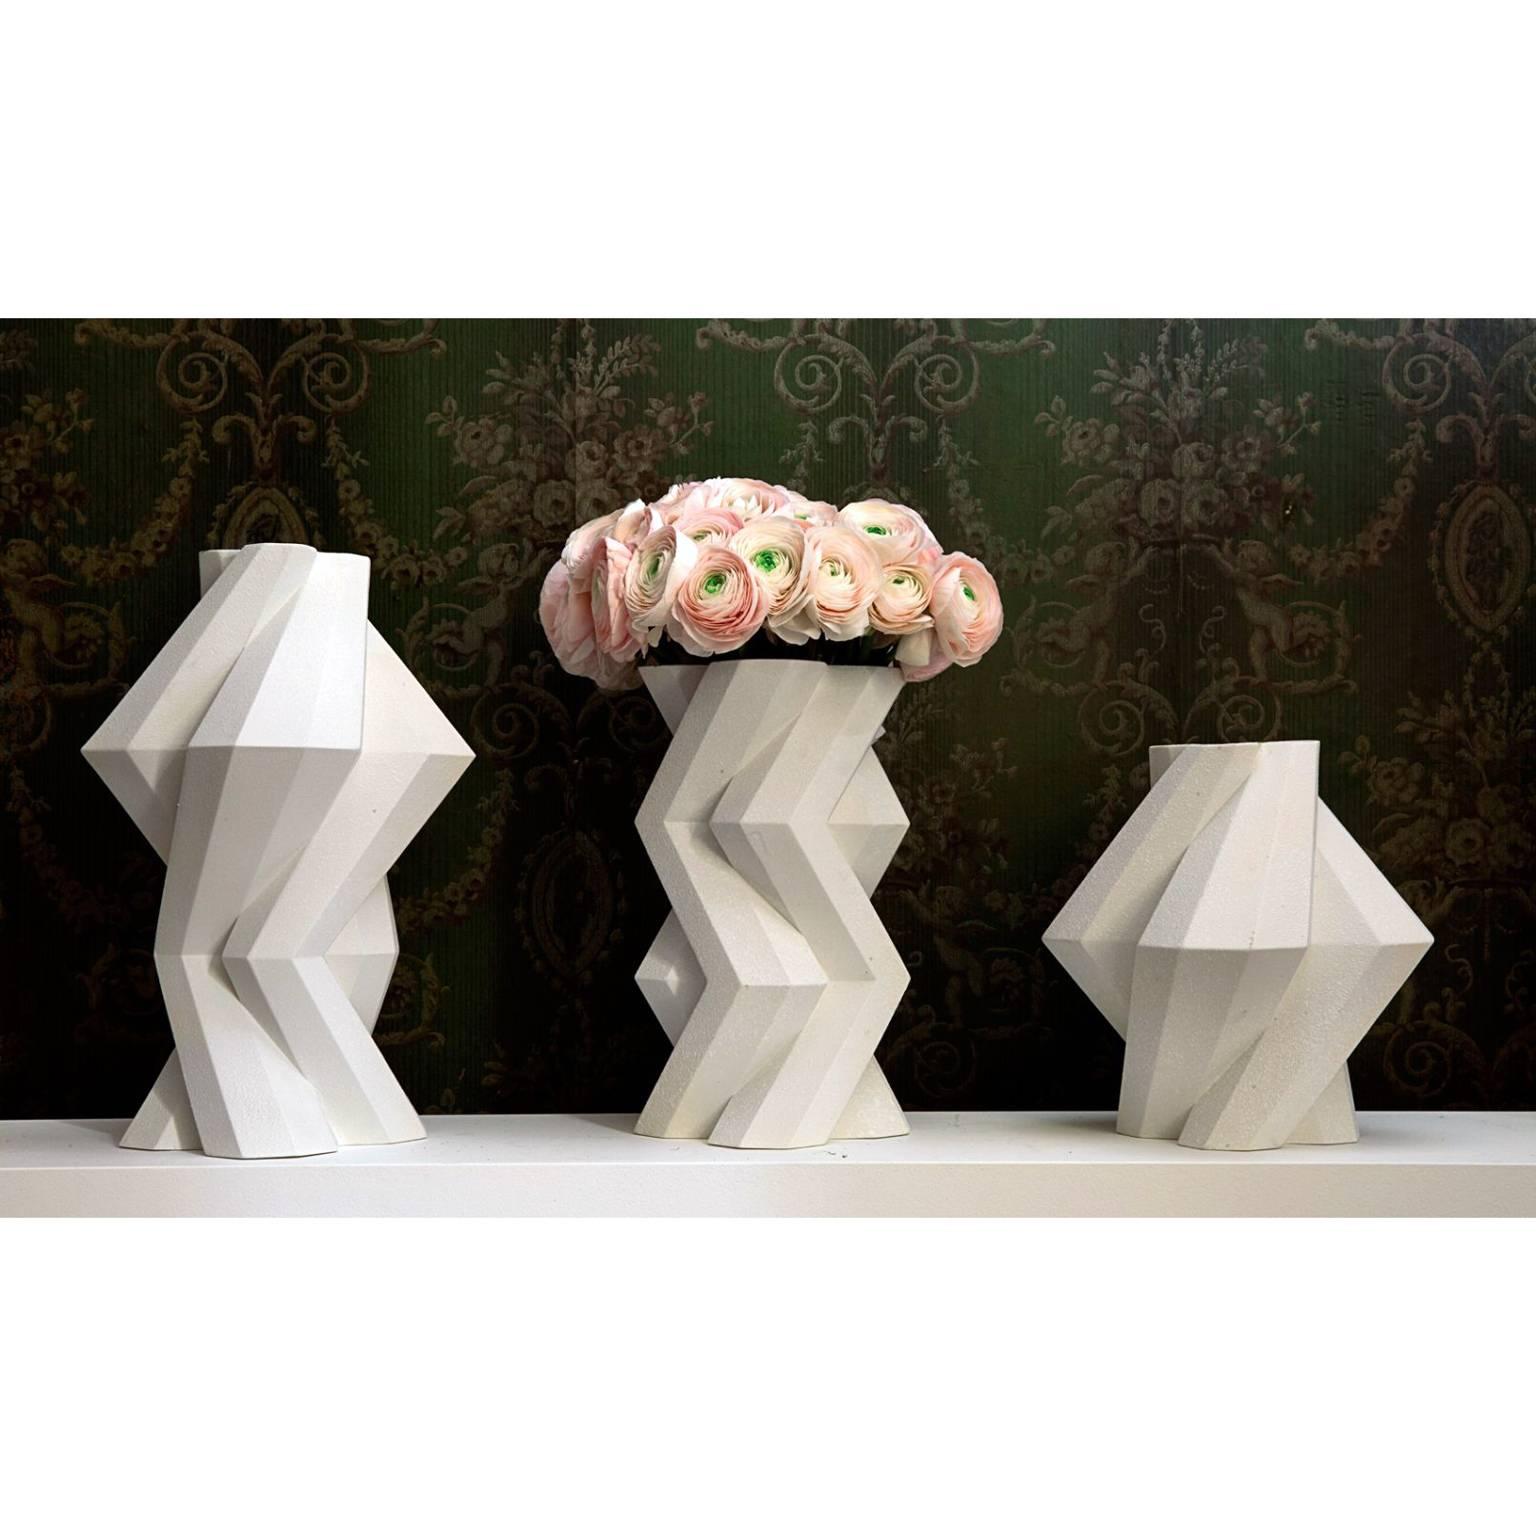 Modern Lara Bohinc, Fortress Castle Vase, White Ceramic by Lara Bohinc